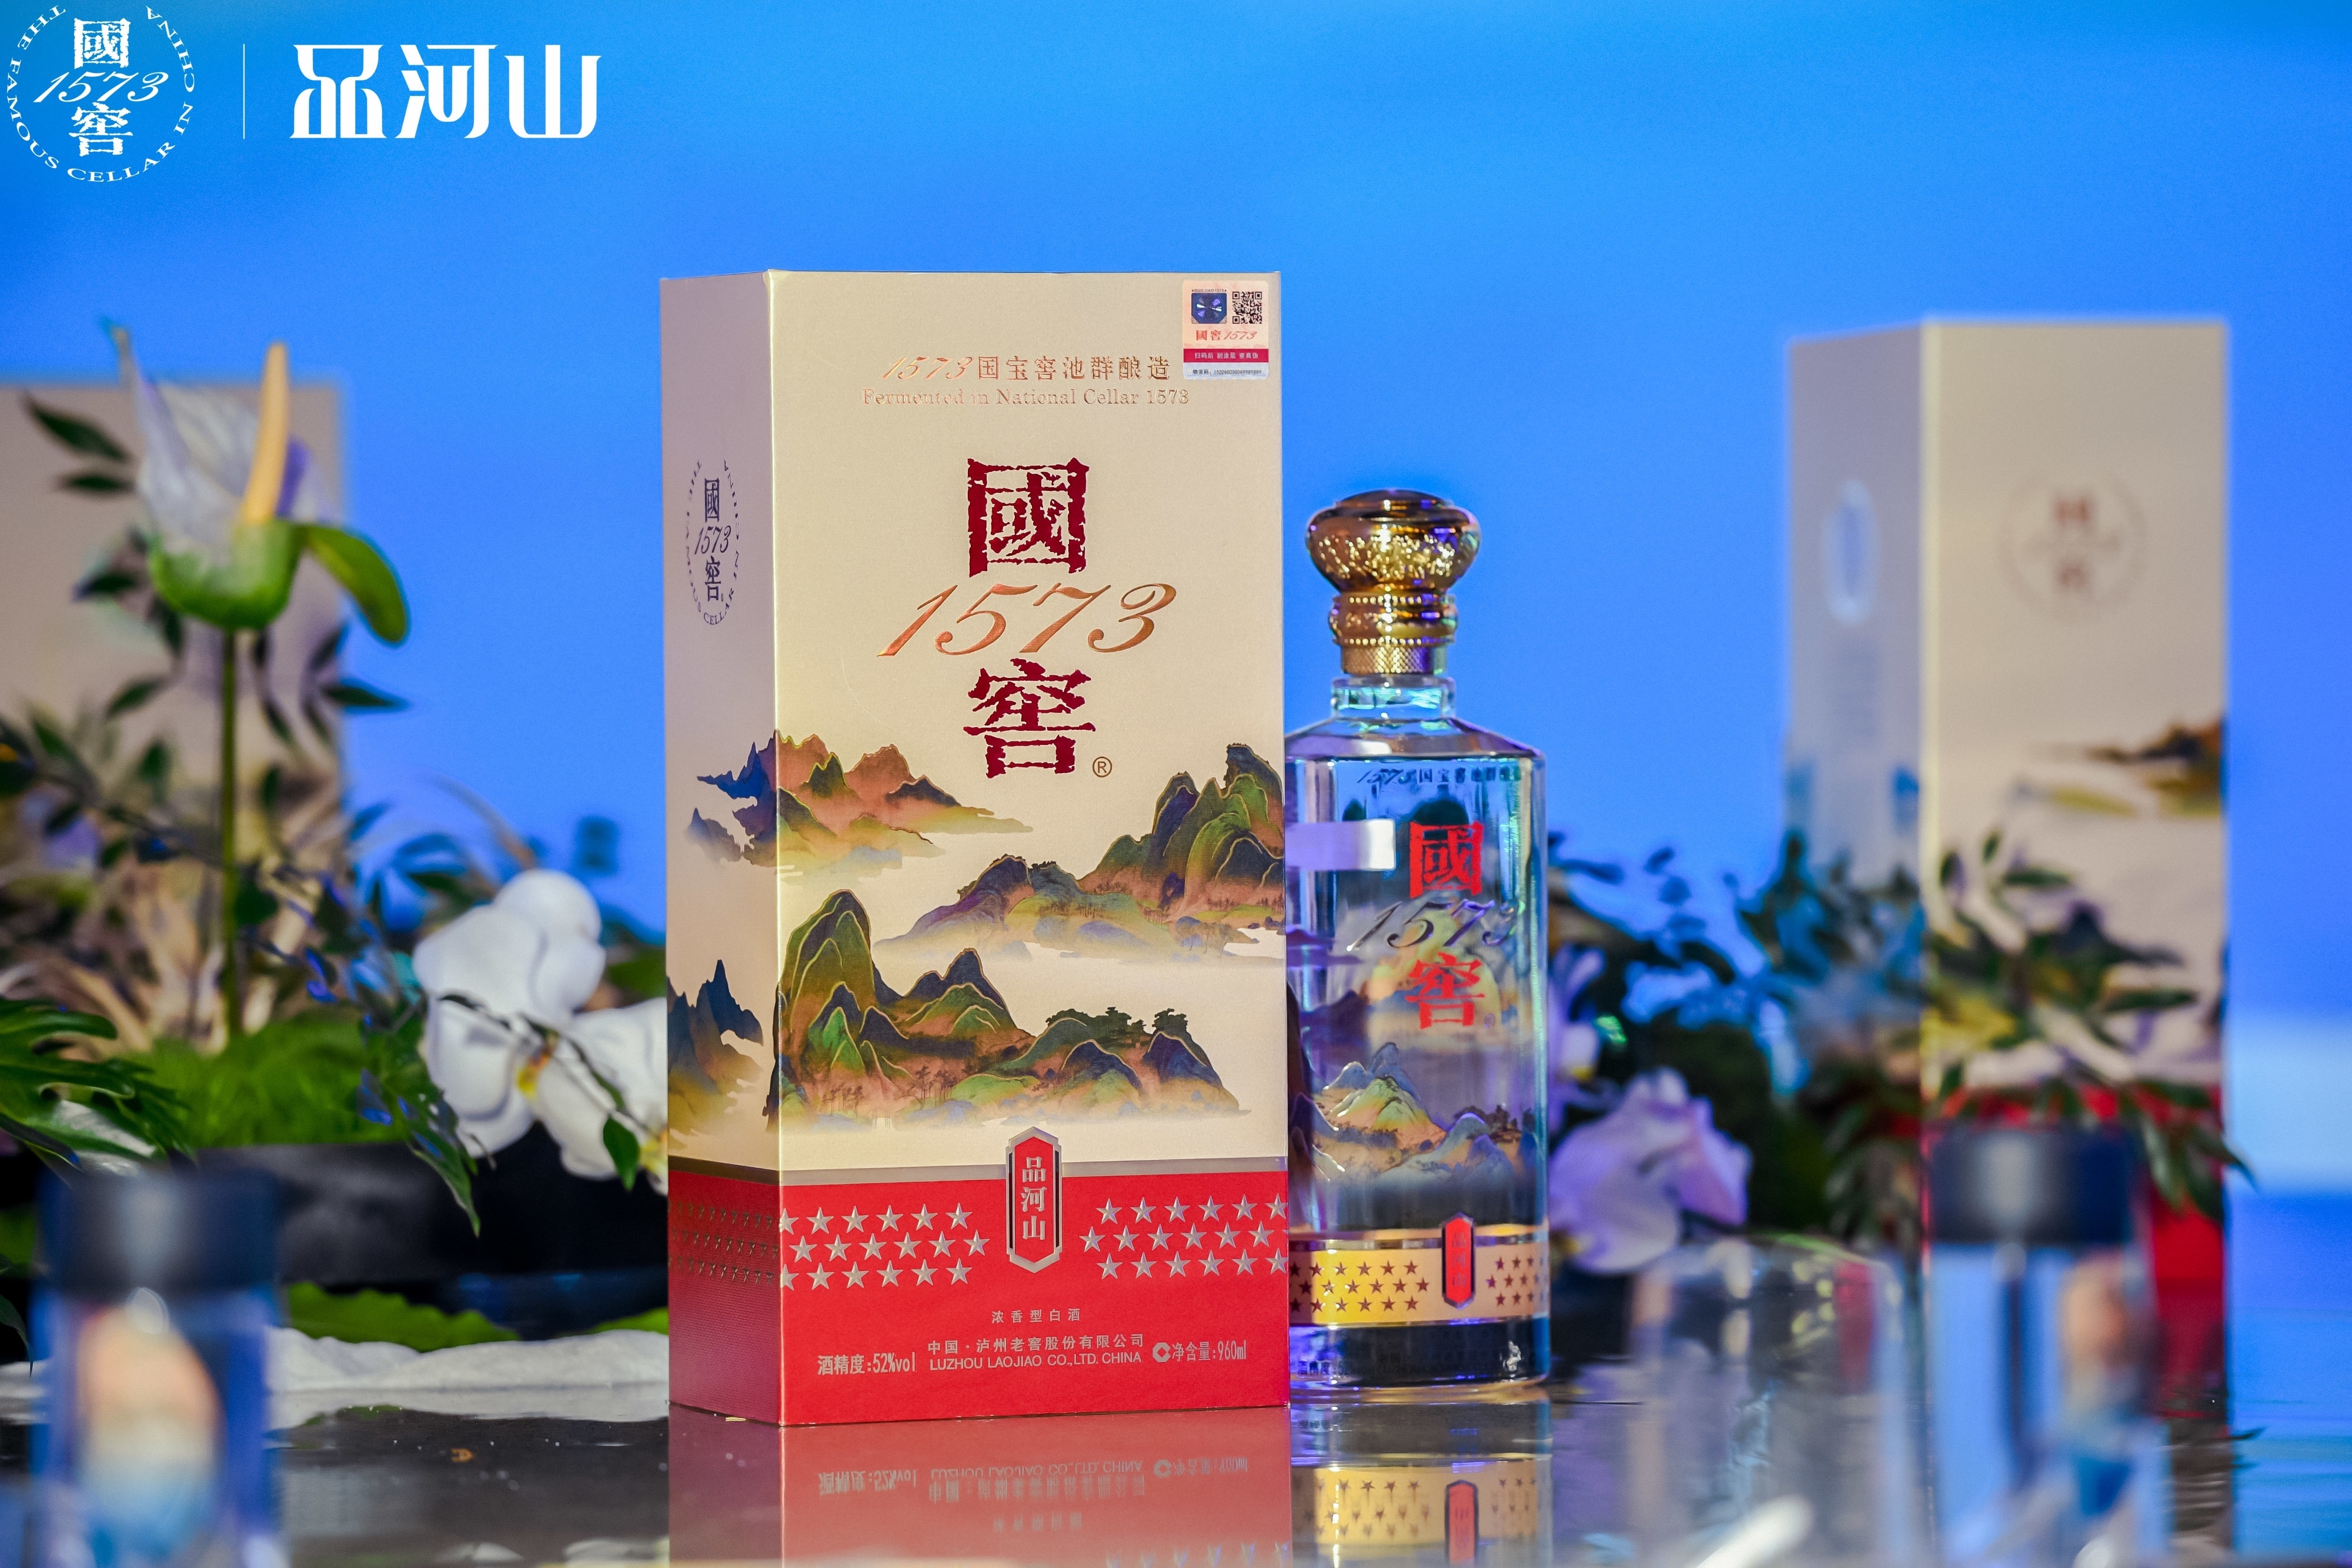 环球体育app在线登录_国窖1573品河山在蓉首发 演绎中国白酒与中国顶级文化艺术融合之美